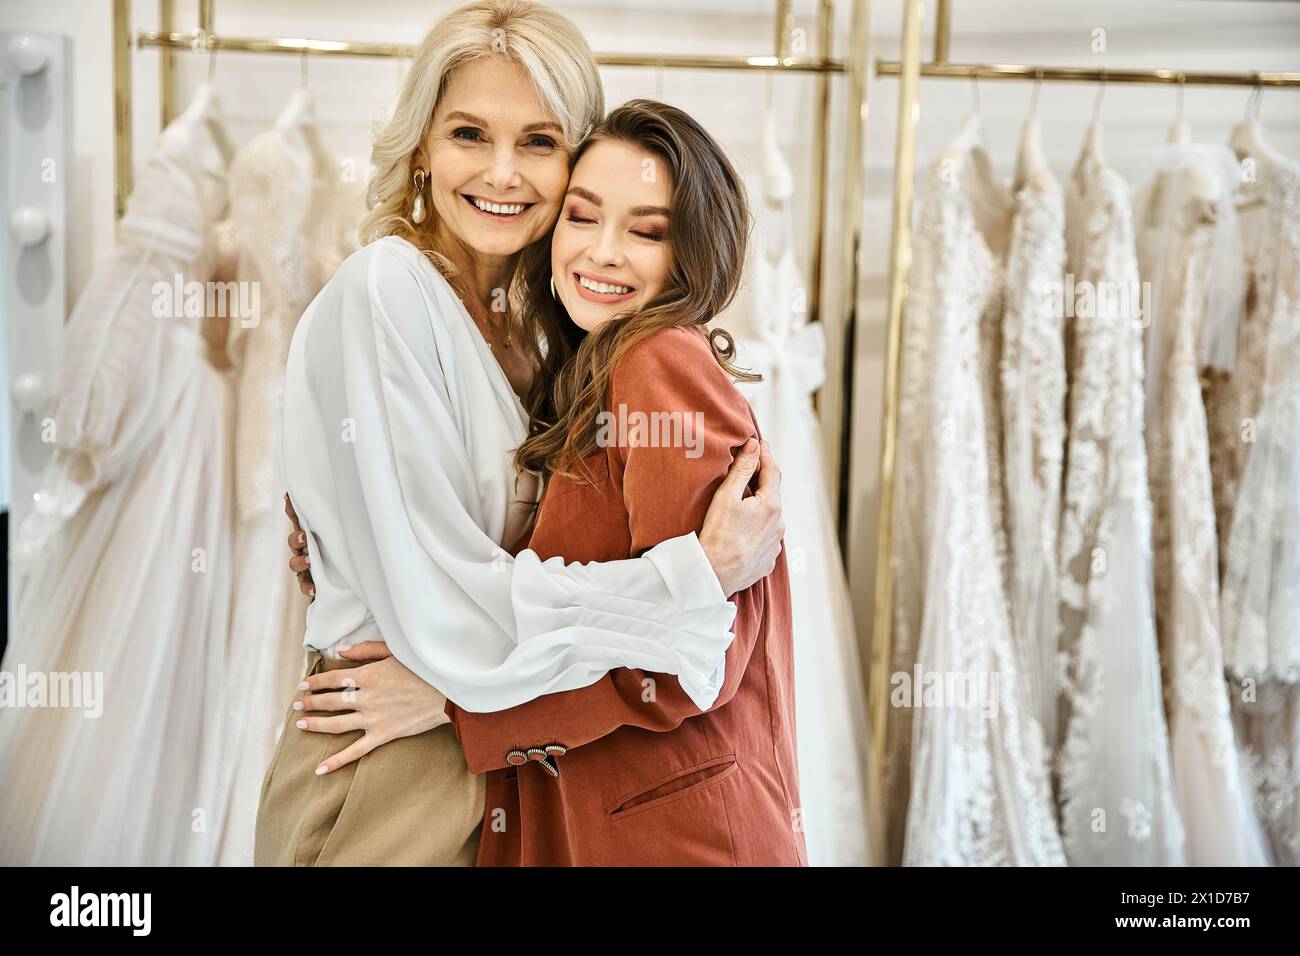 Zwei Frauen umarmen sich vor Brautkleidern, eine junge Braut und ihre Mutter teilen einen Moment der Freude und Liebe. Stockfoto